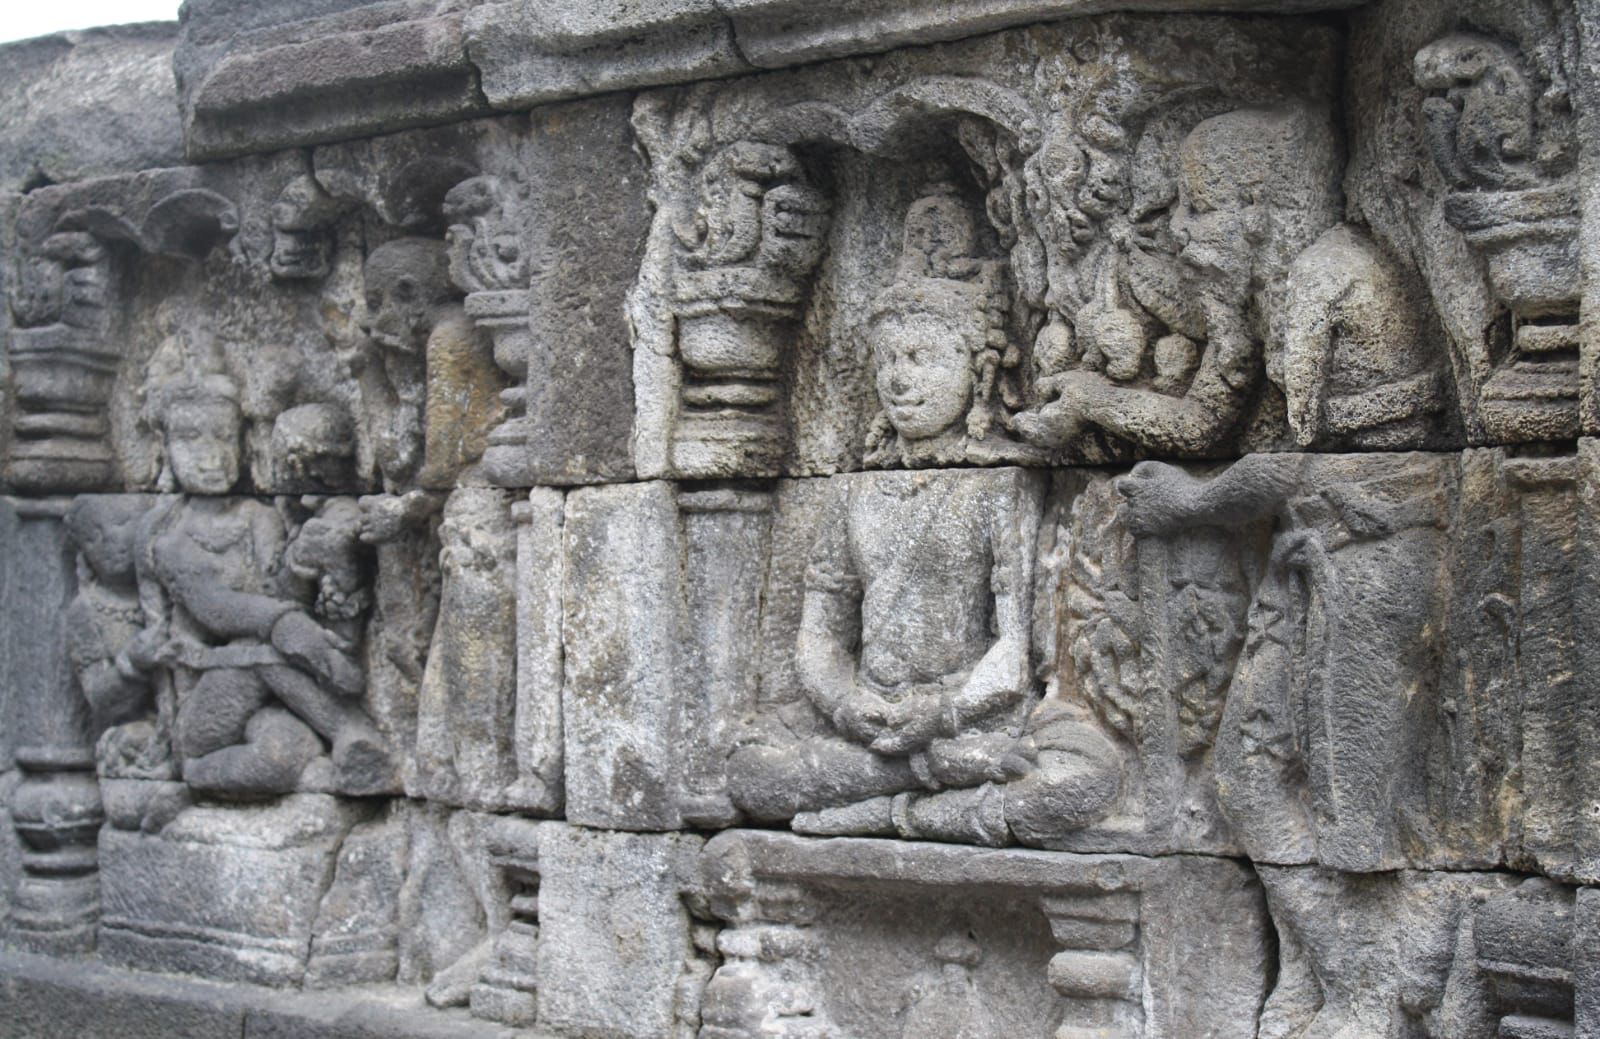 Arti dan Makna Relief Candi Borobudur, Ternyata Ini Alasan Kenapa Banyak Relief